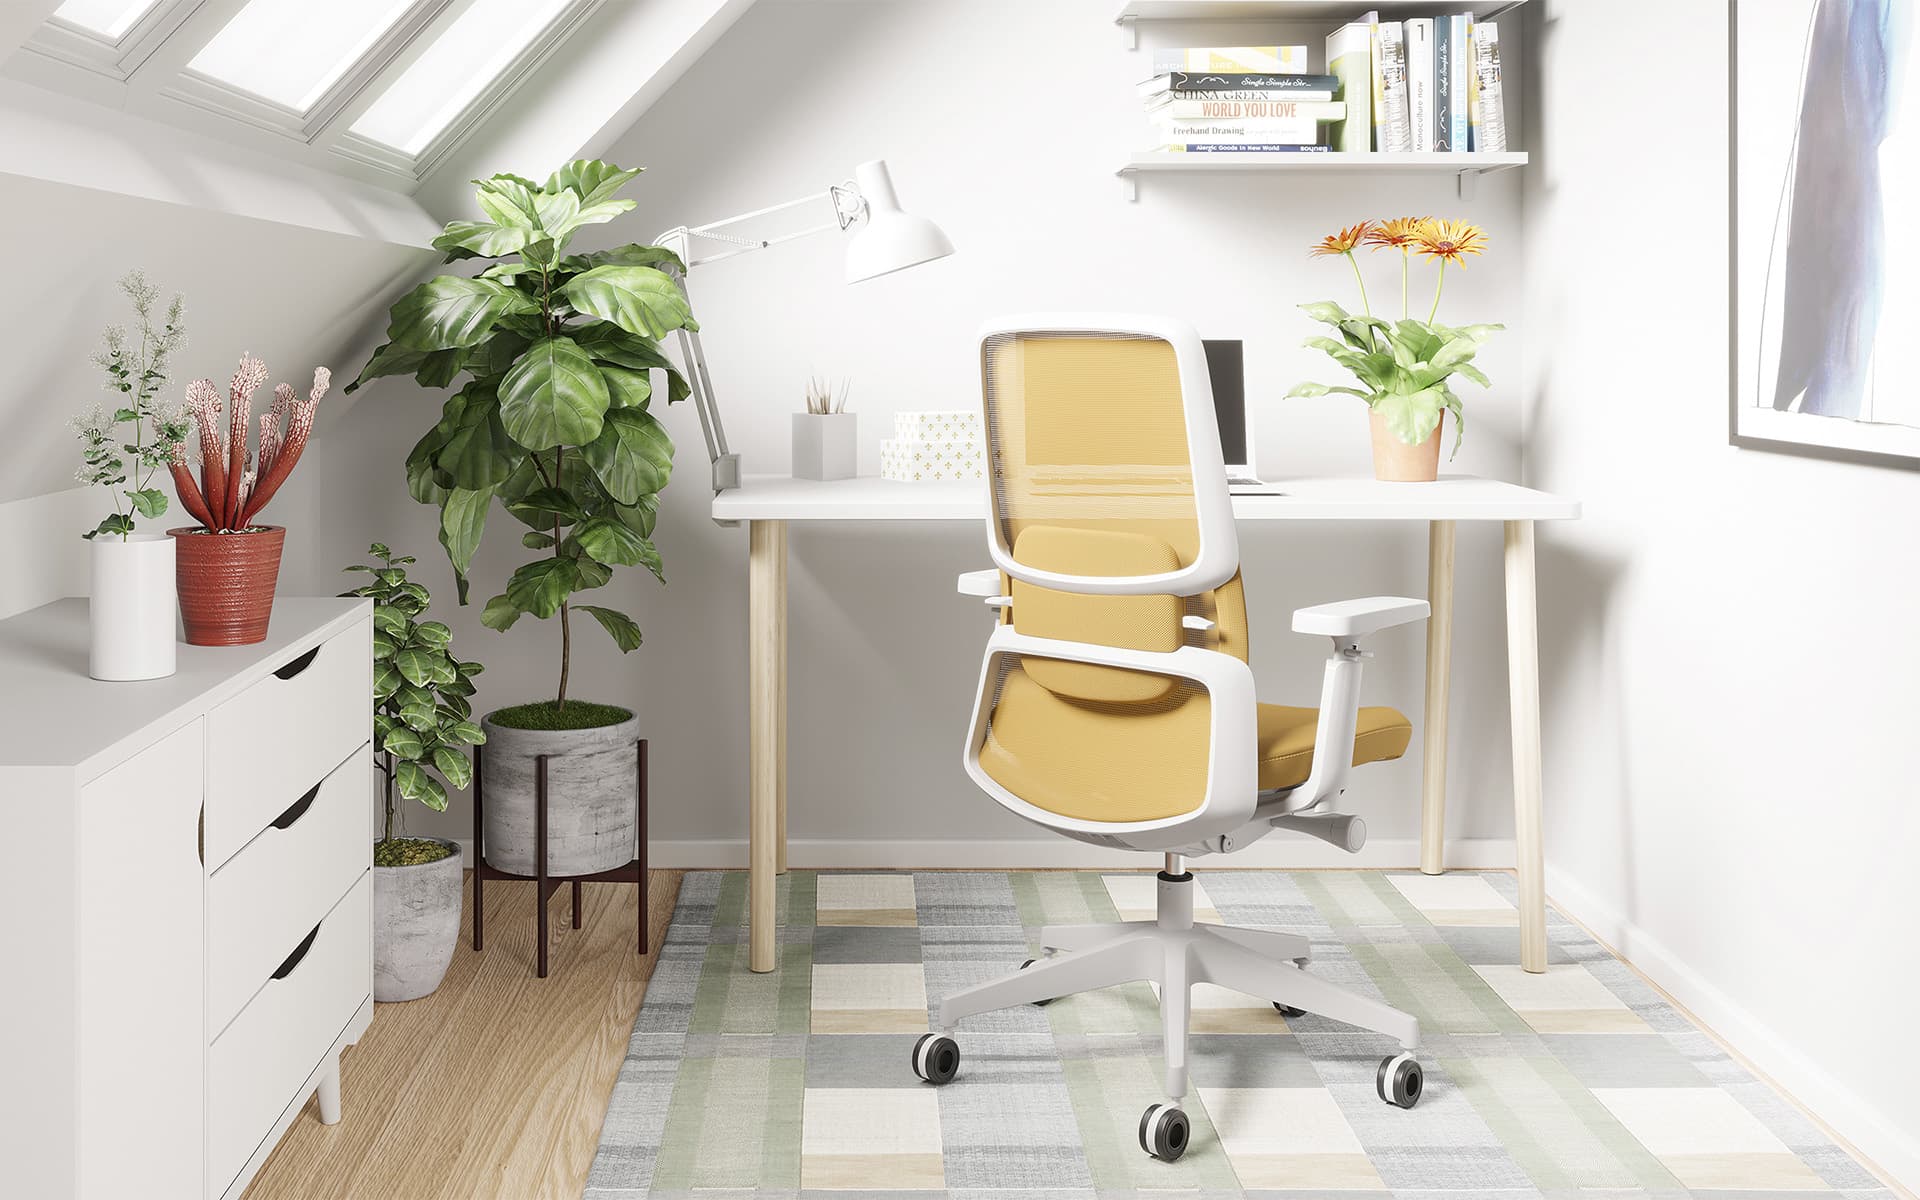 M2 Bürostuhl von ITO Design in Weiß und Dunkelgelb in einem kleinen, modernen, lichtdurchfluteten Home-Office